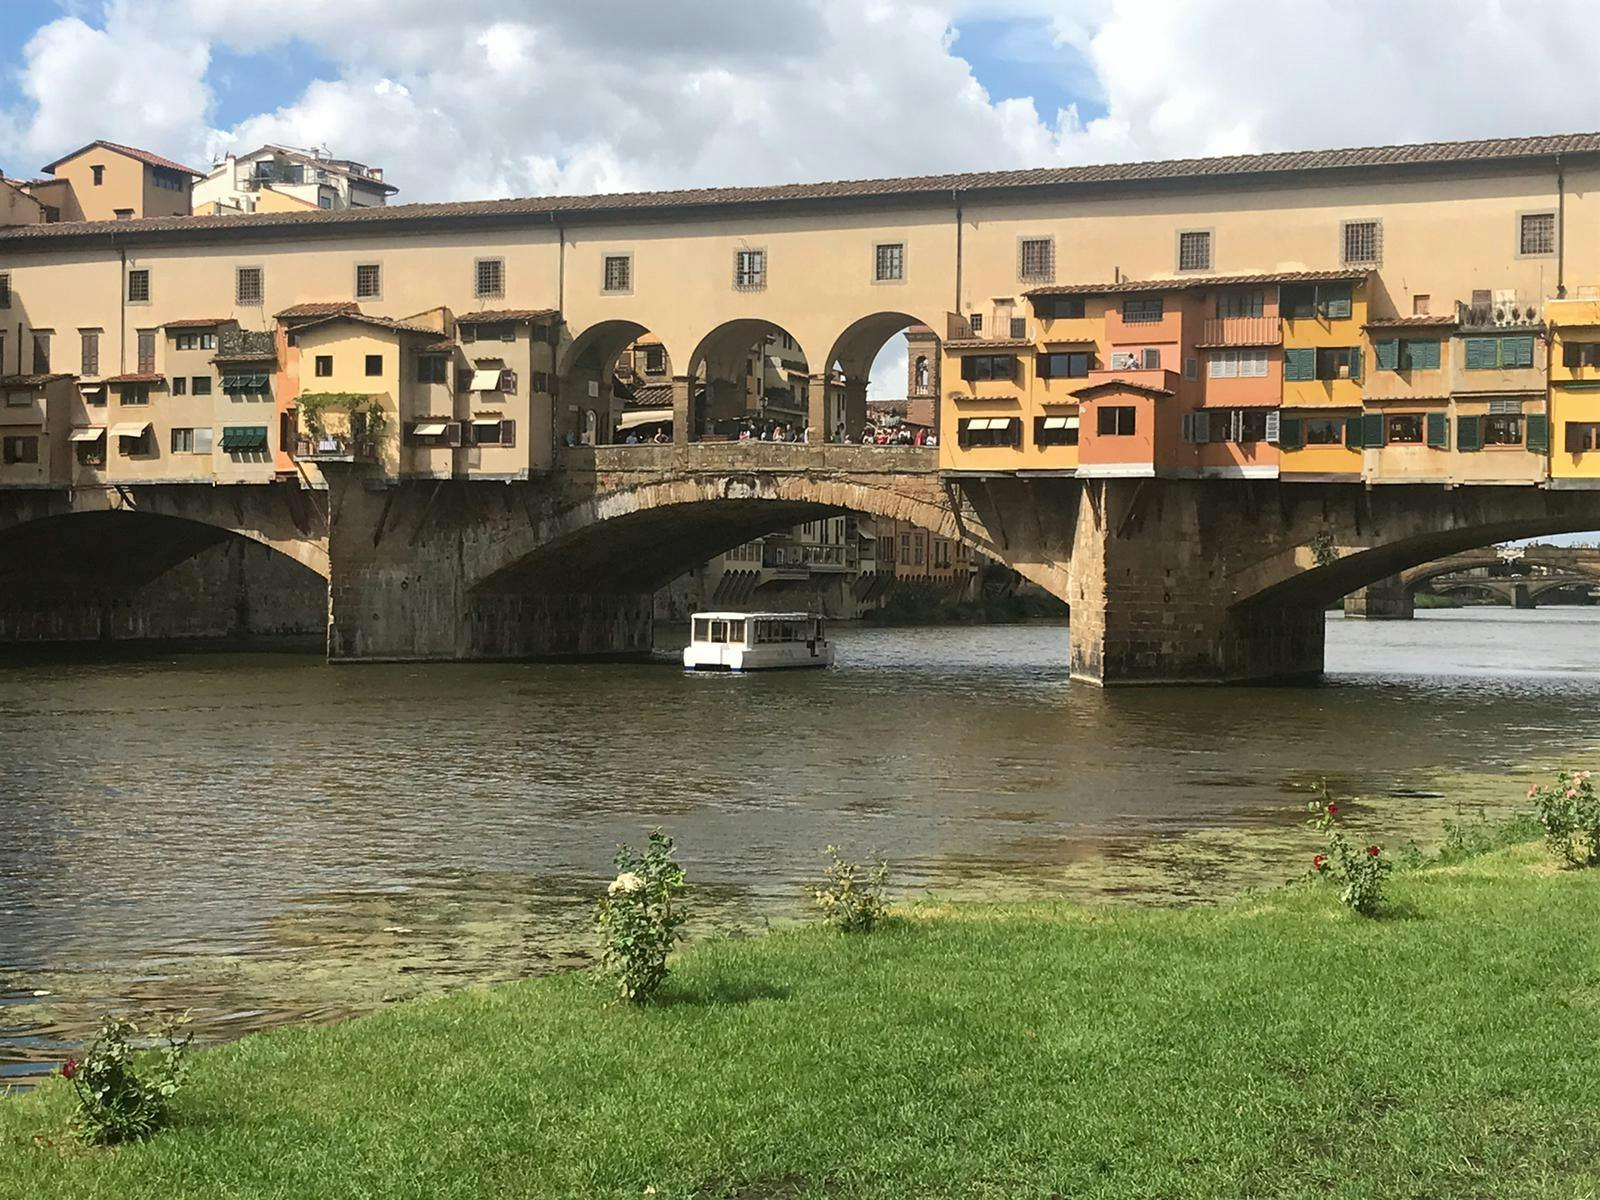 Crociera in e-boat sull'Arno con esperienza gastronomica toscana a Firenze